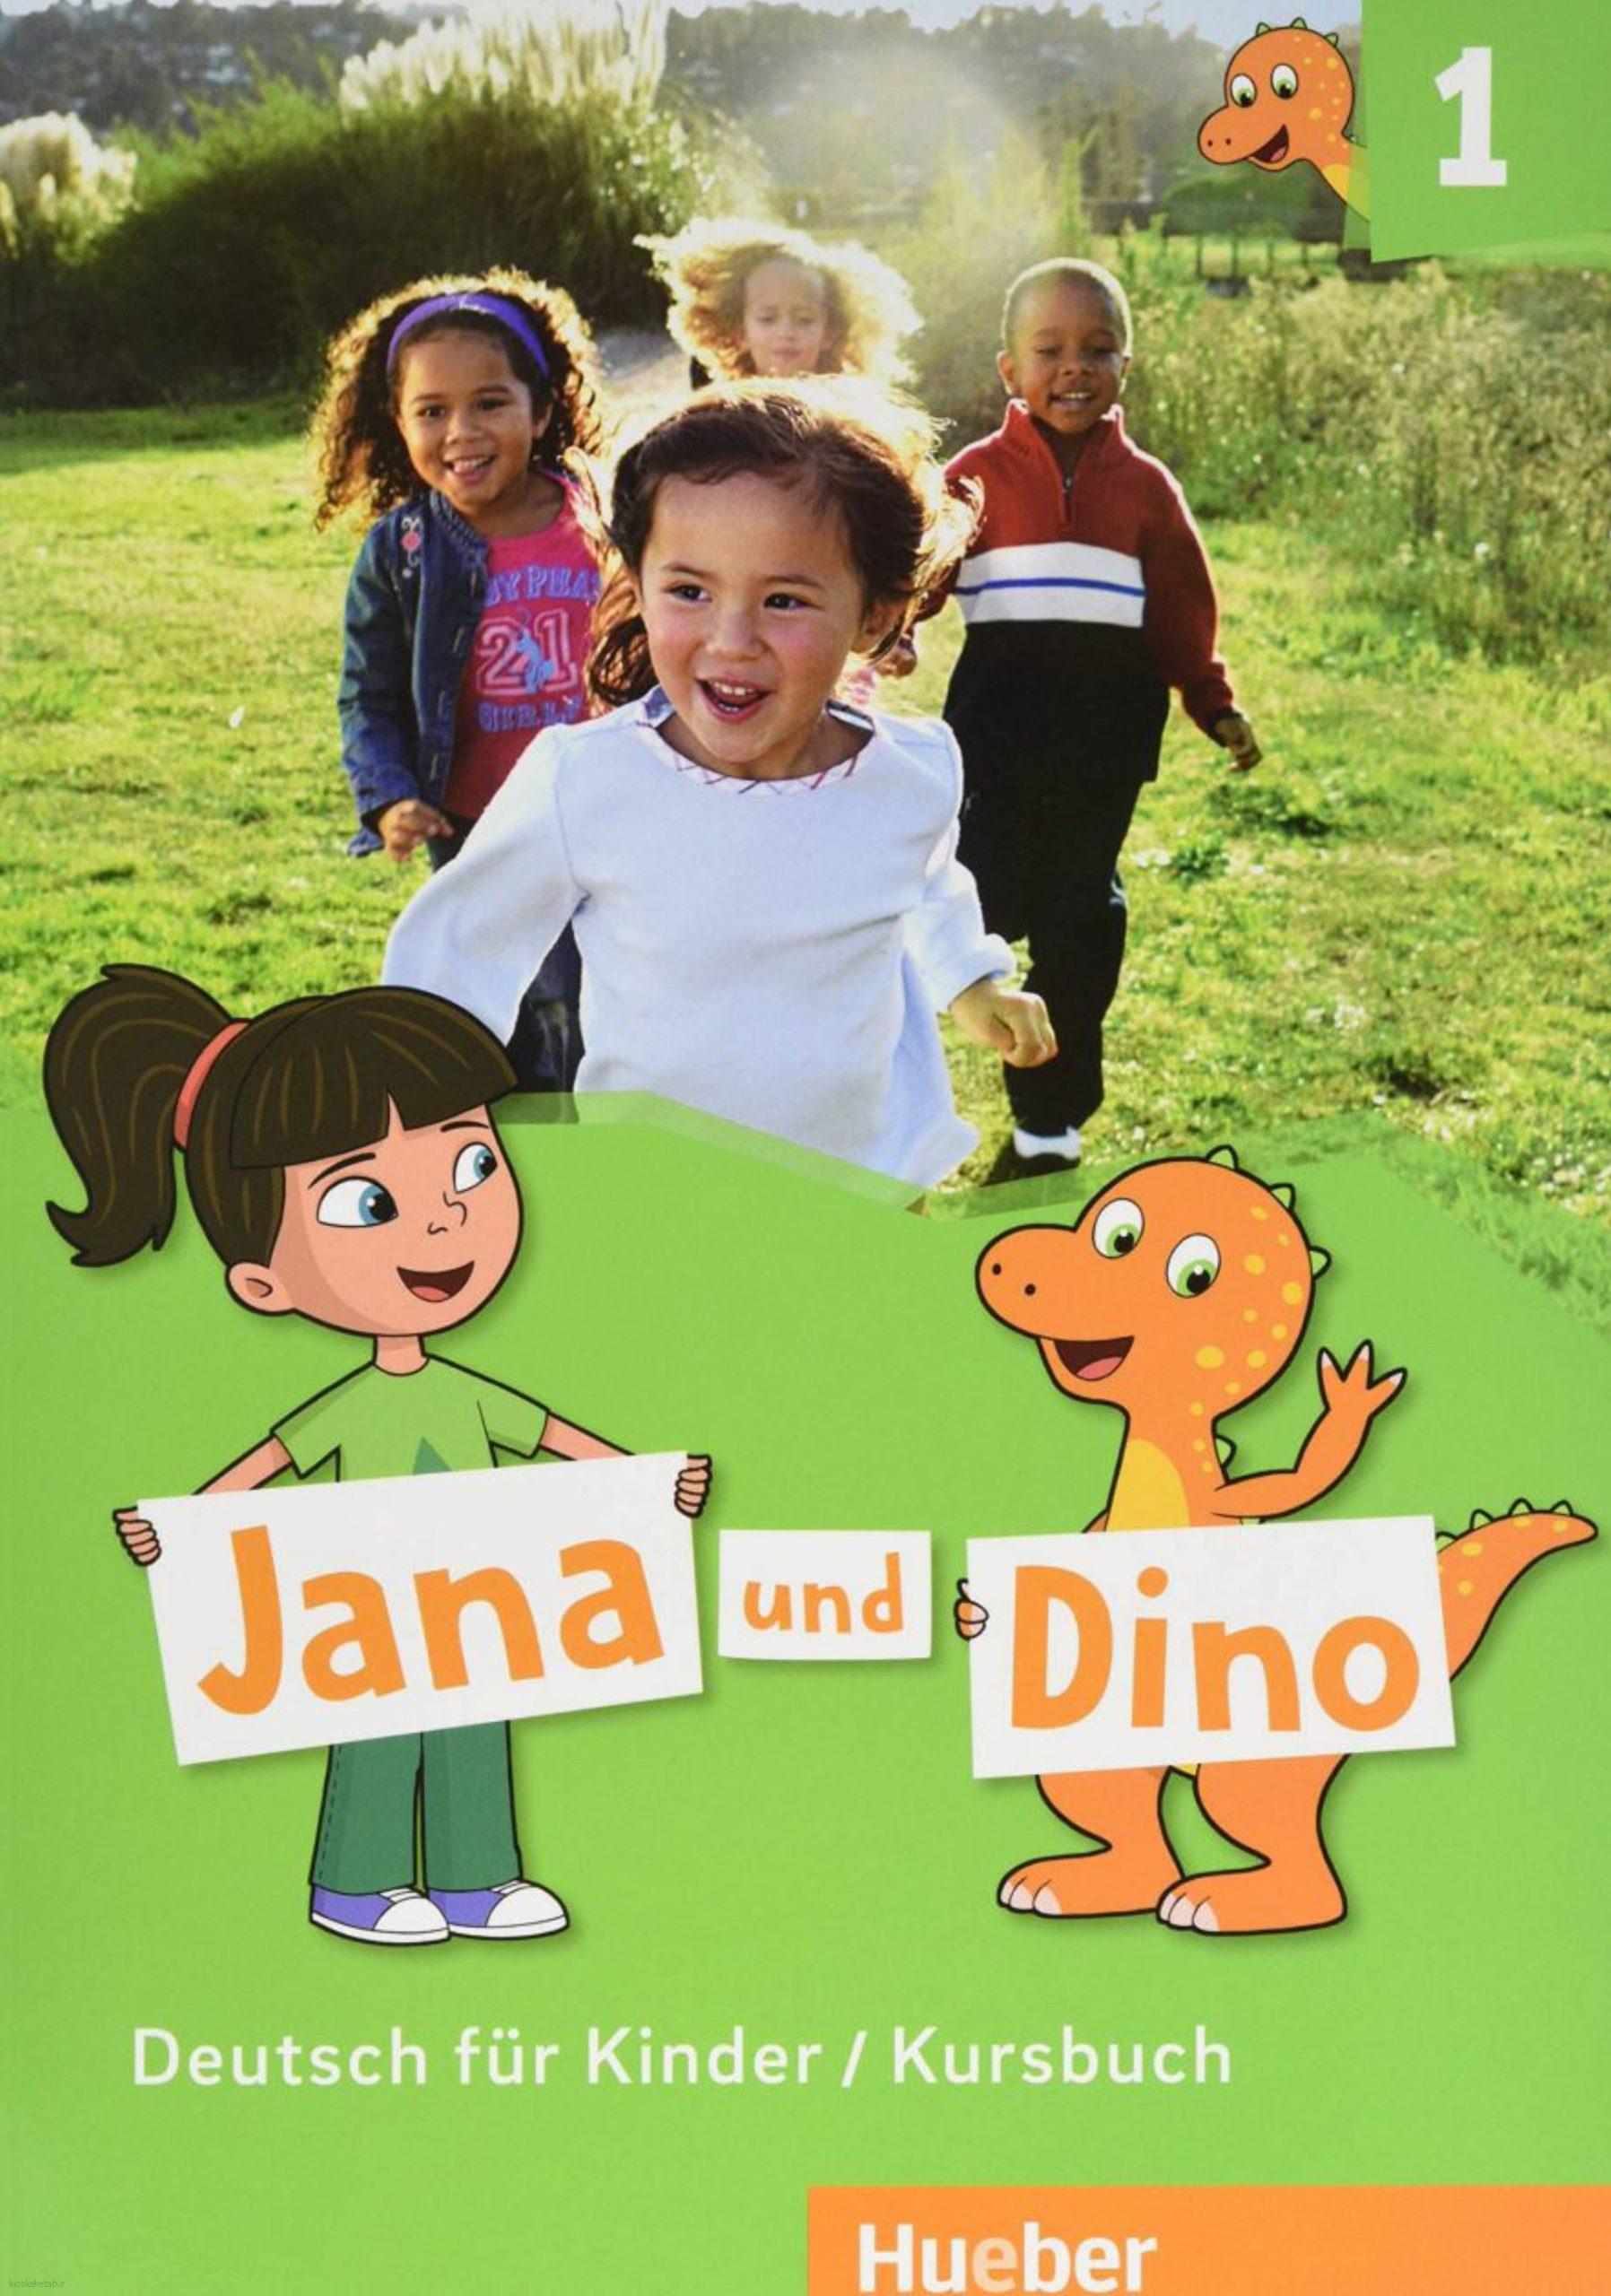 دانلود کتاب آلمانیjana und dino 1